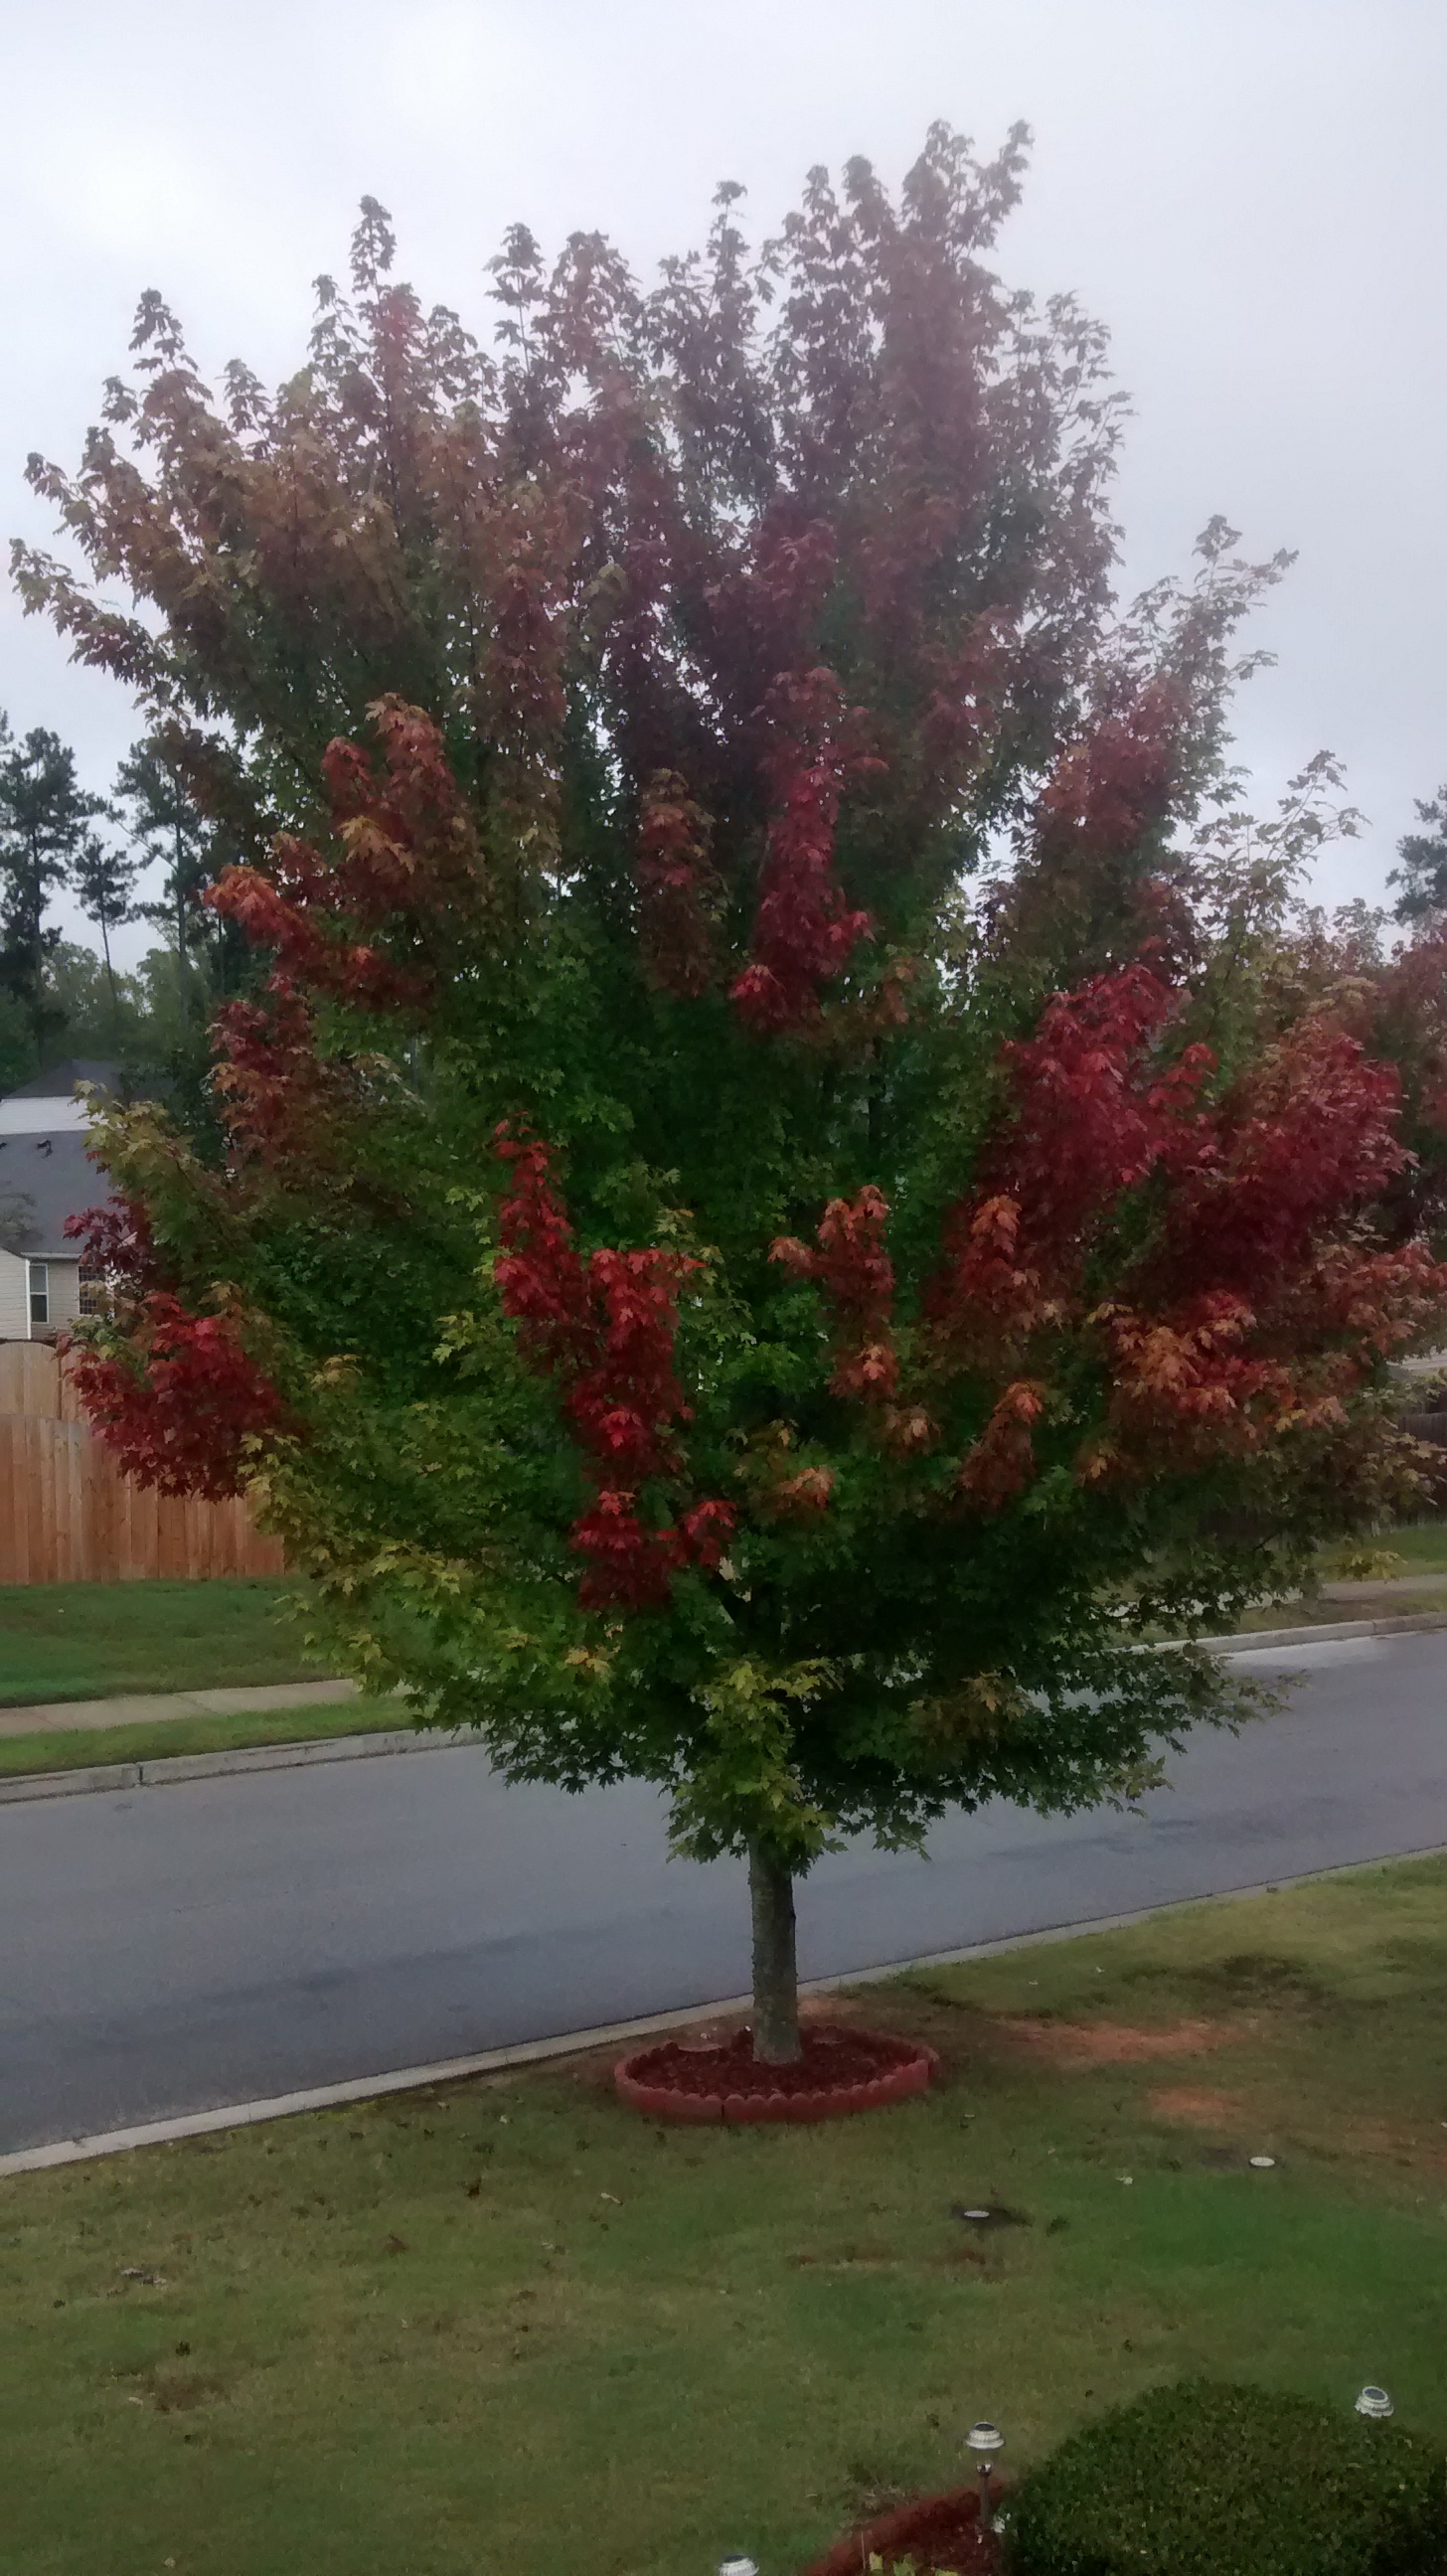 Fall in Georgia